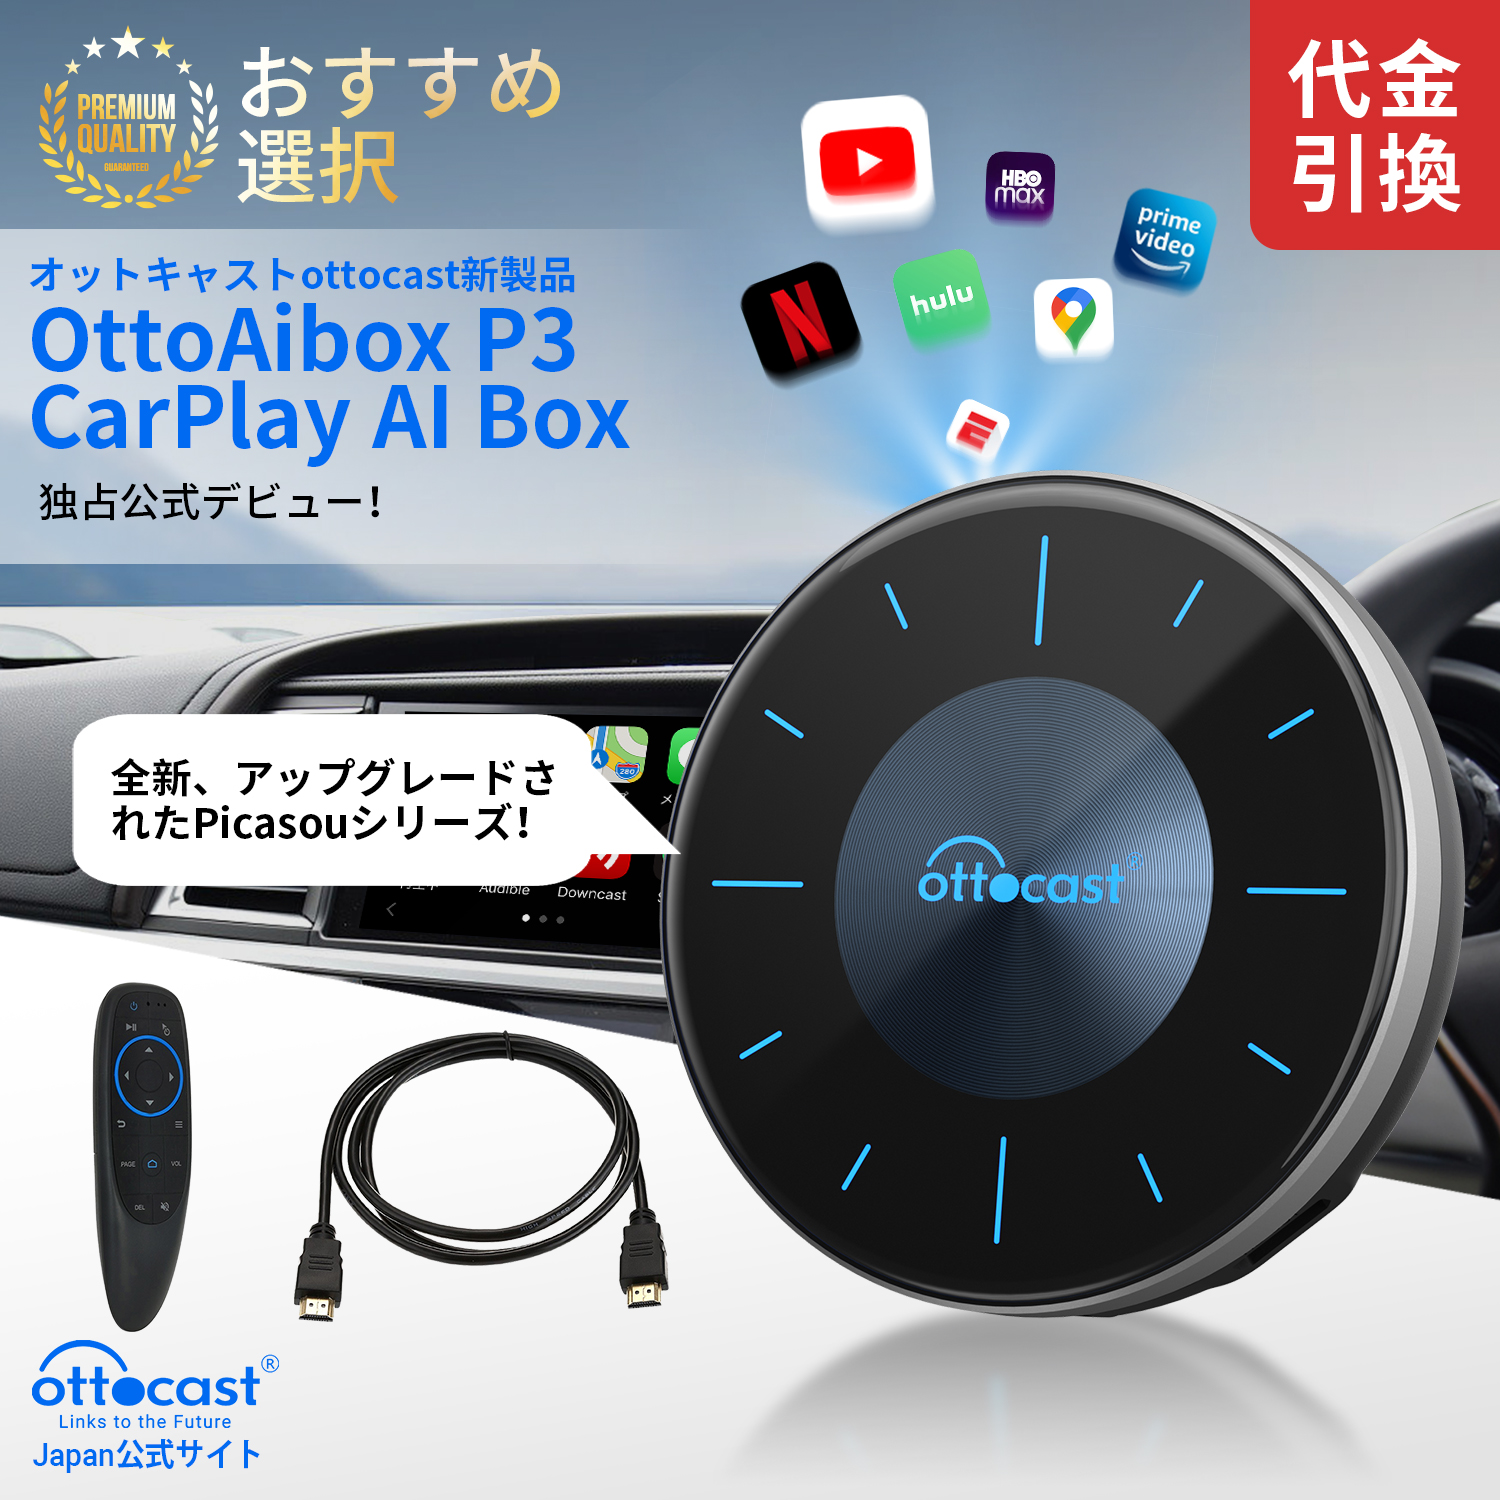 OttoAibox P3 CarPlay AI Box